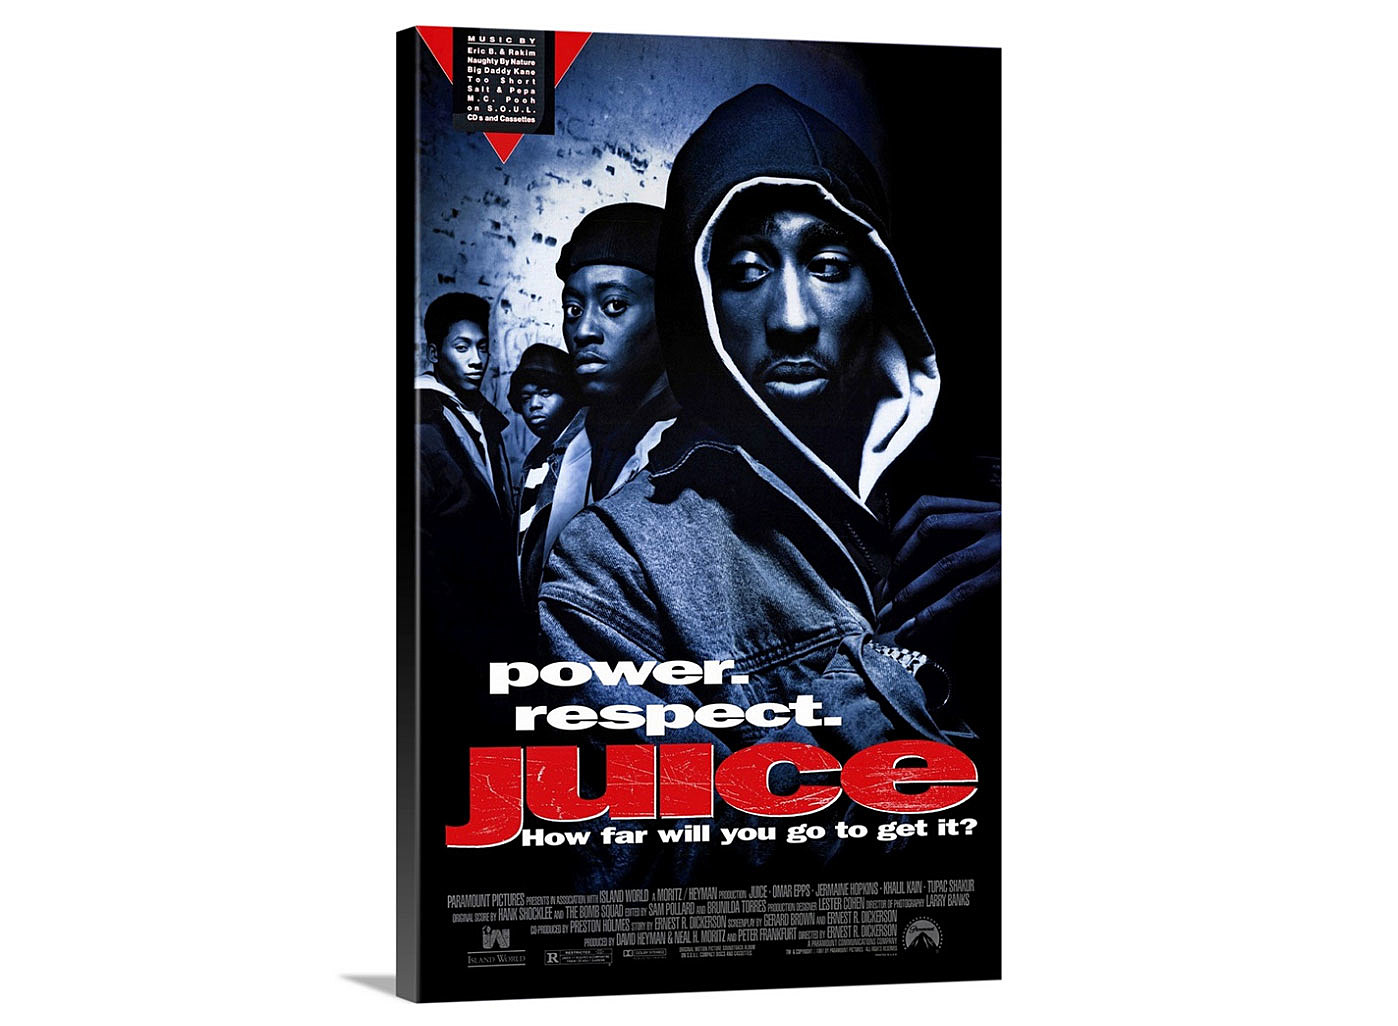 Tupac suýt nữa không thủ vai Bishop trong phim Juice